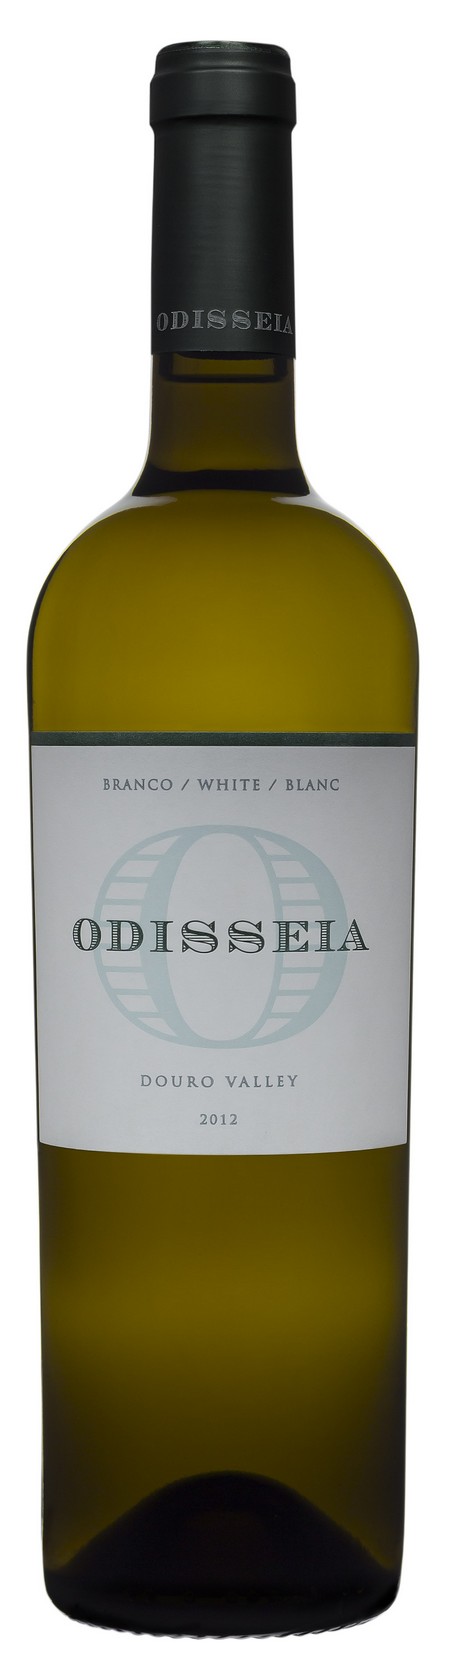 odisseia-white-2013